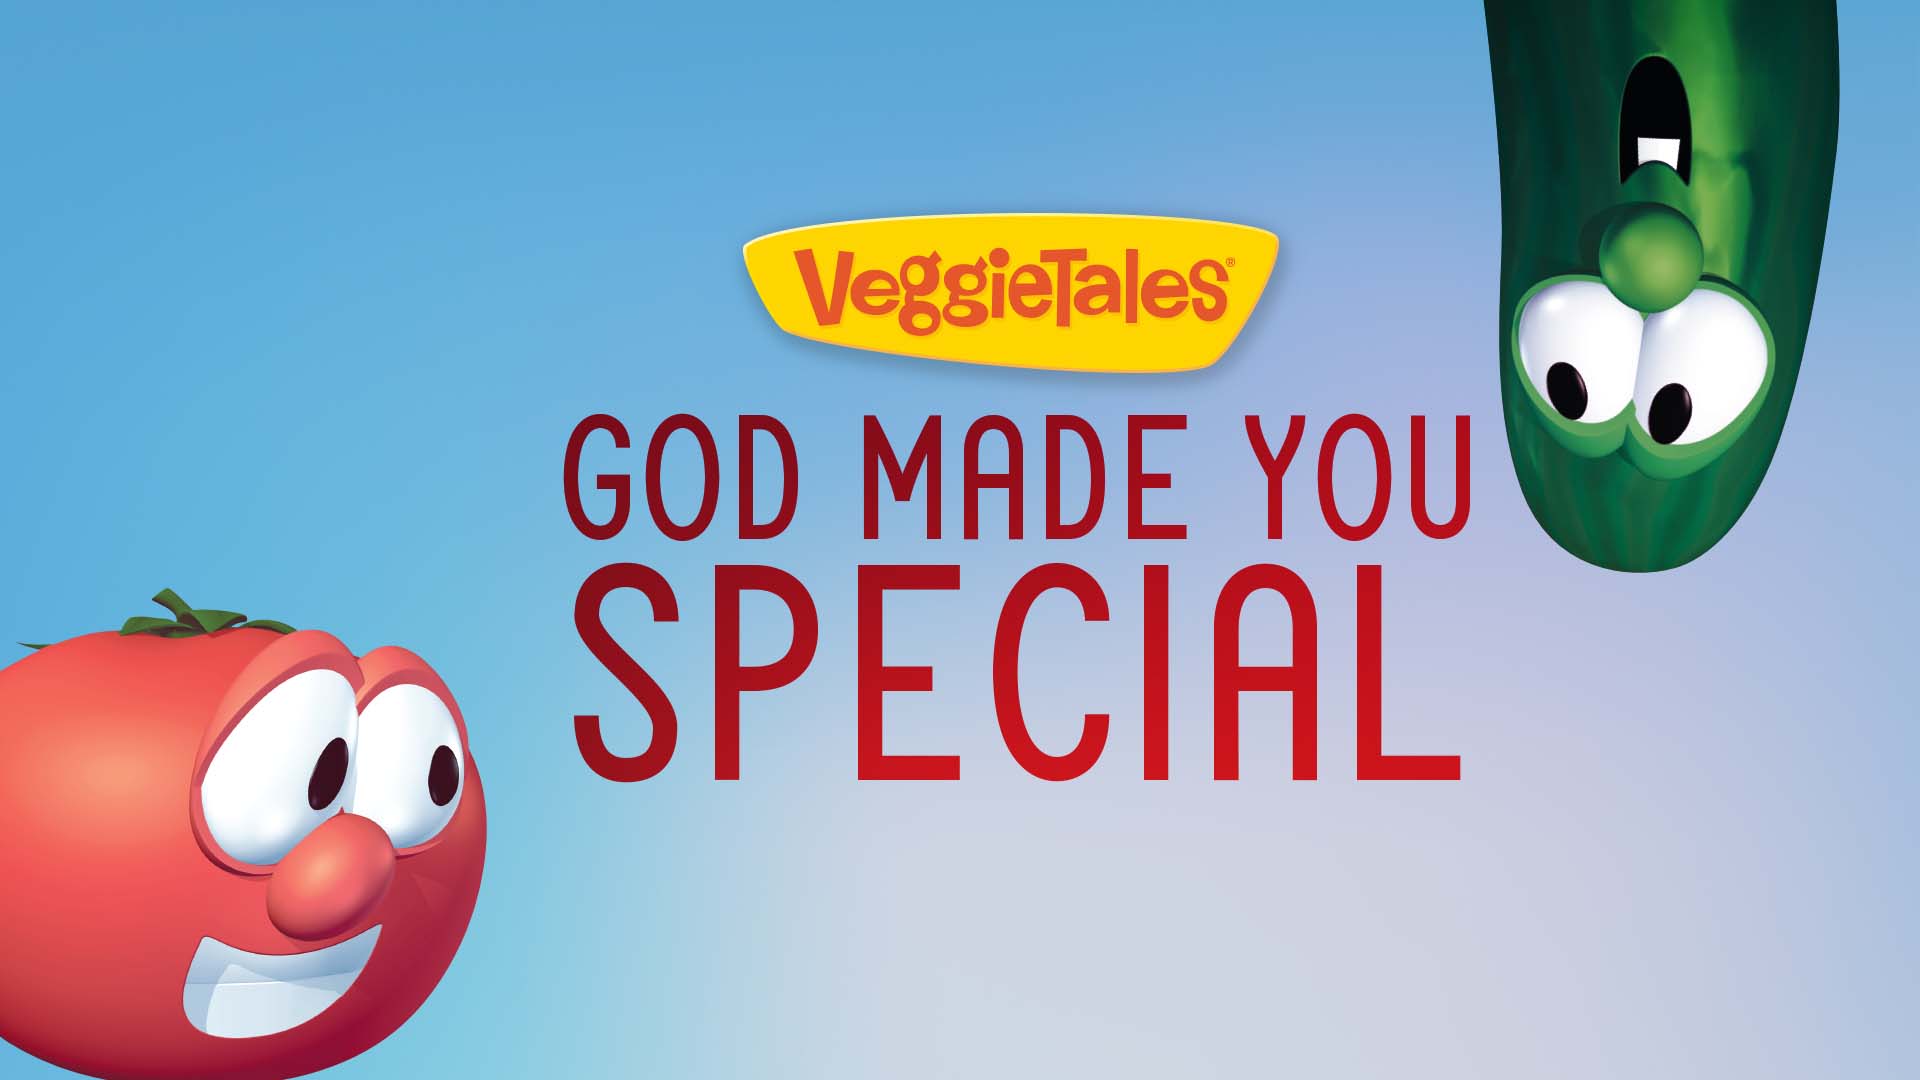 VeggieTales bible stories